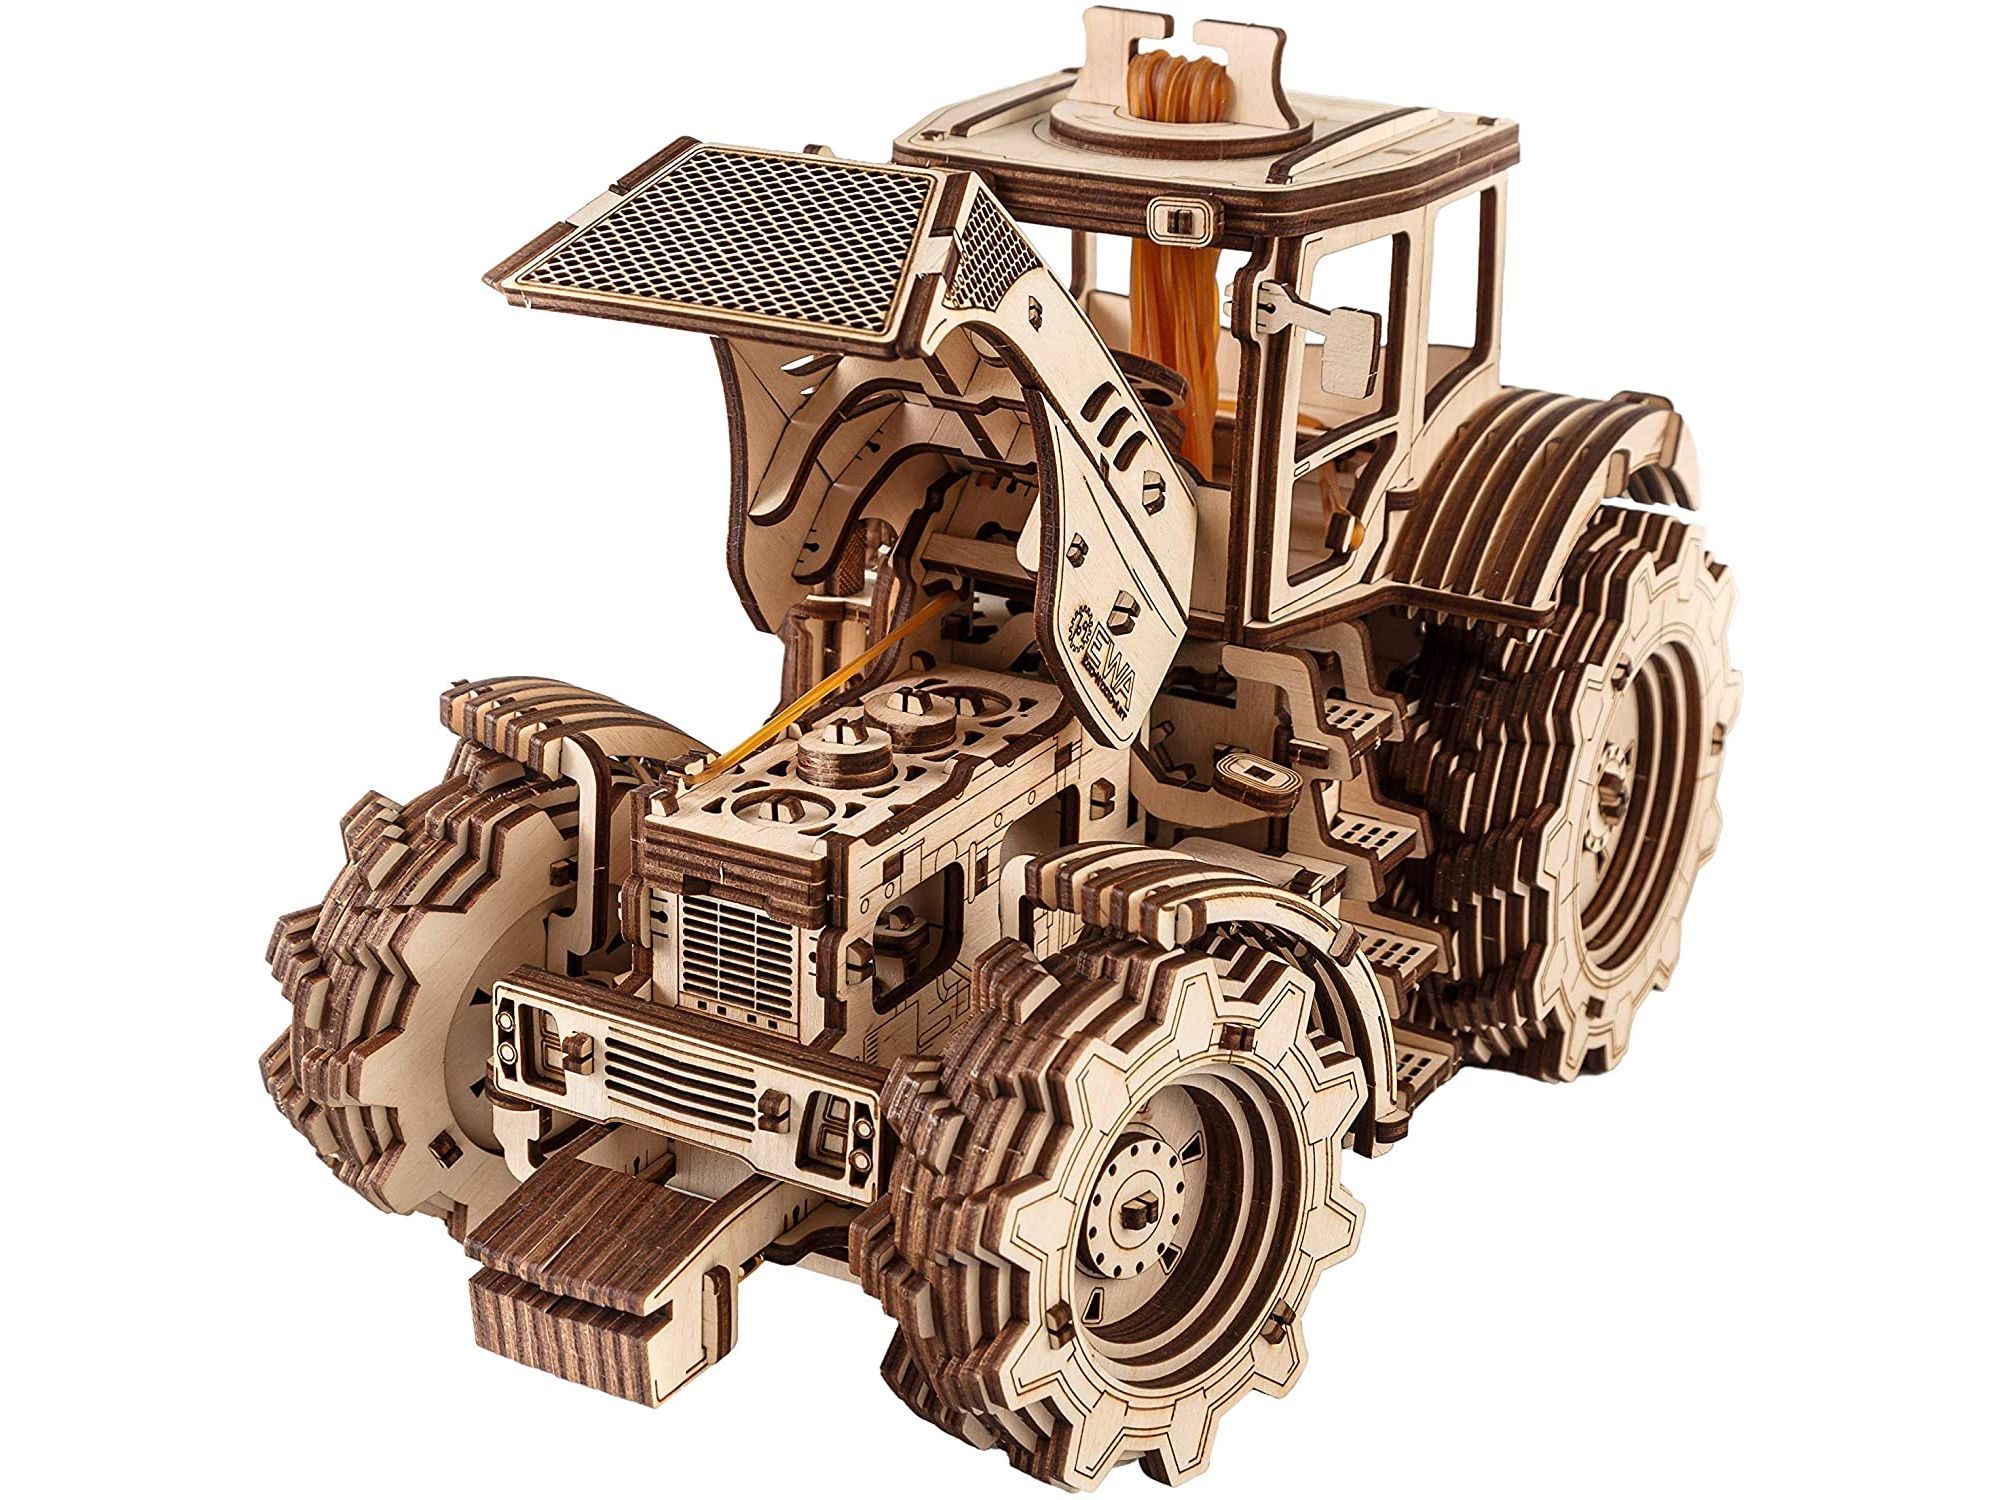 eco-wood-art-tractor